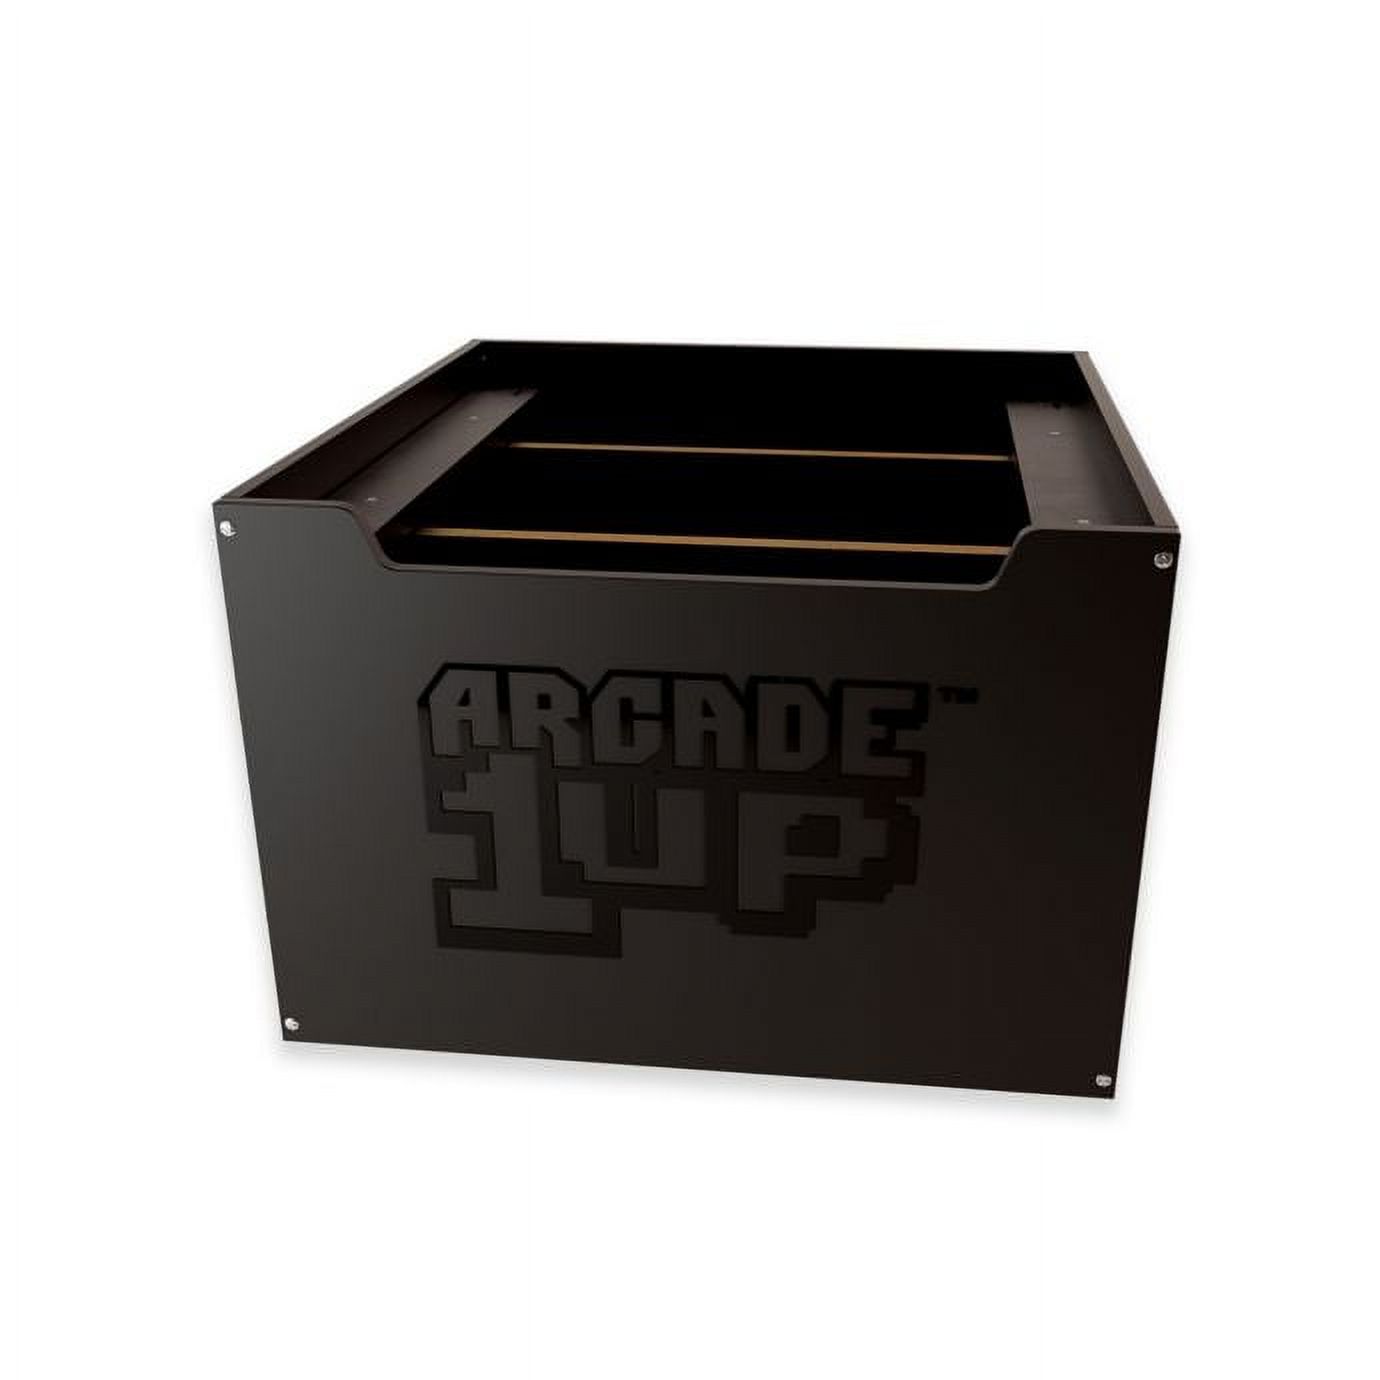 Arcade1Up Branded Riser, 1FT, Black - image 1 of 3